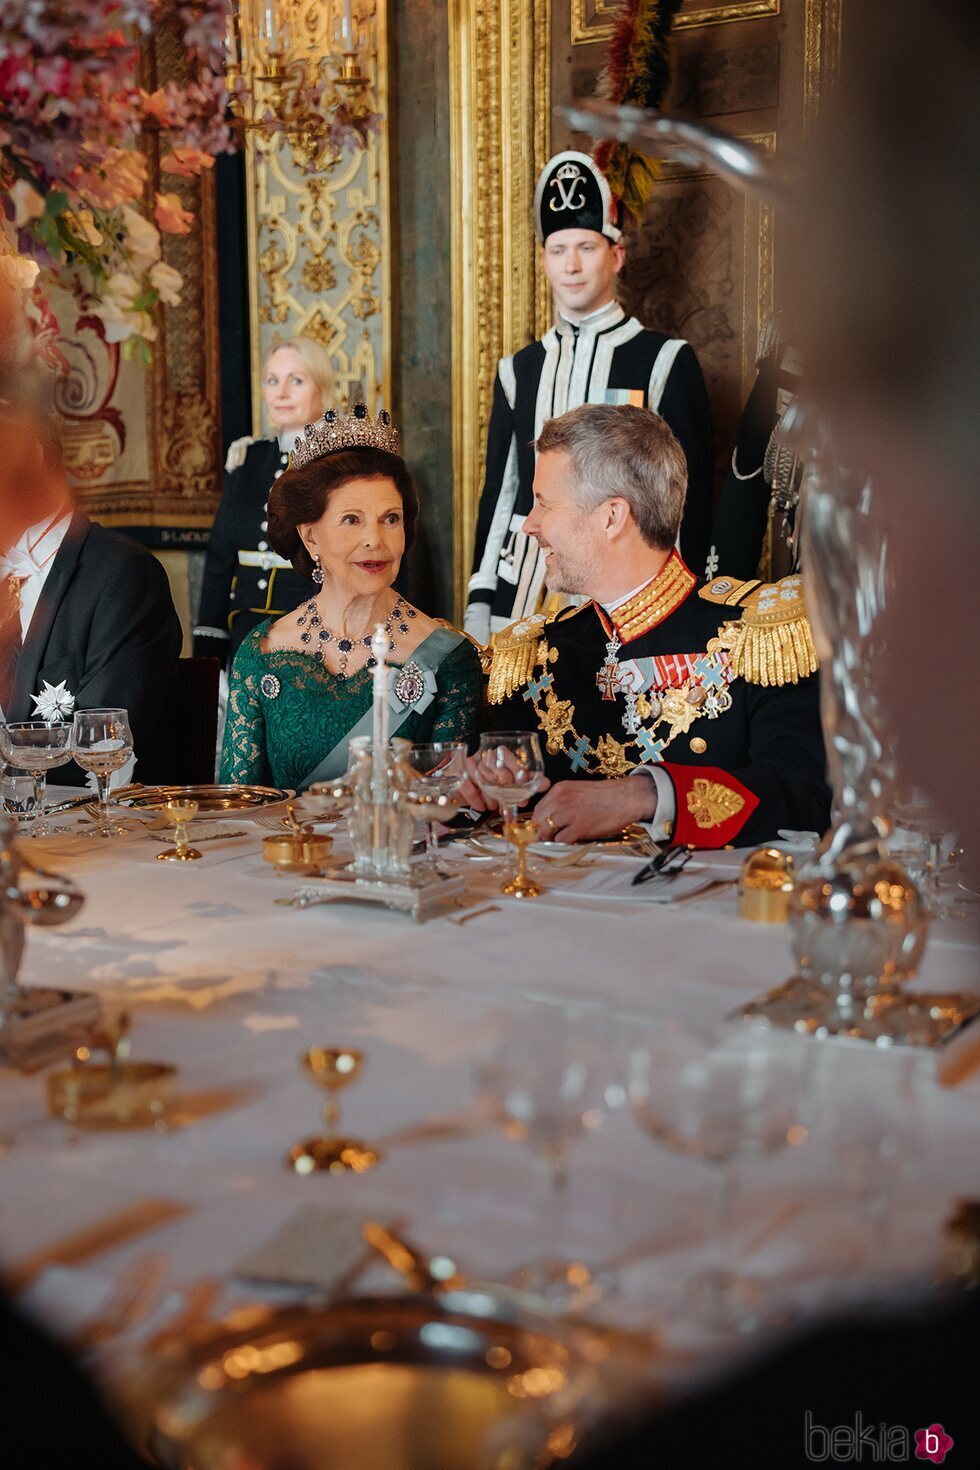 Silvia de Suecia y Federico de Dinamarca en la cena de gala por la Visita de Estado de los Reyes de Dinamarca en Suecia